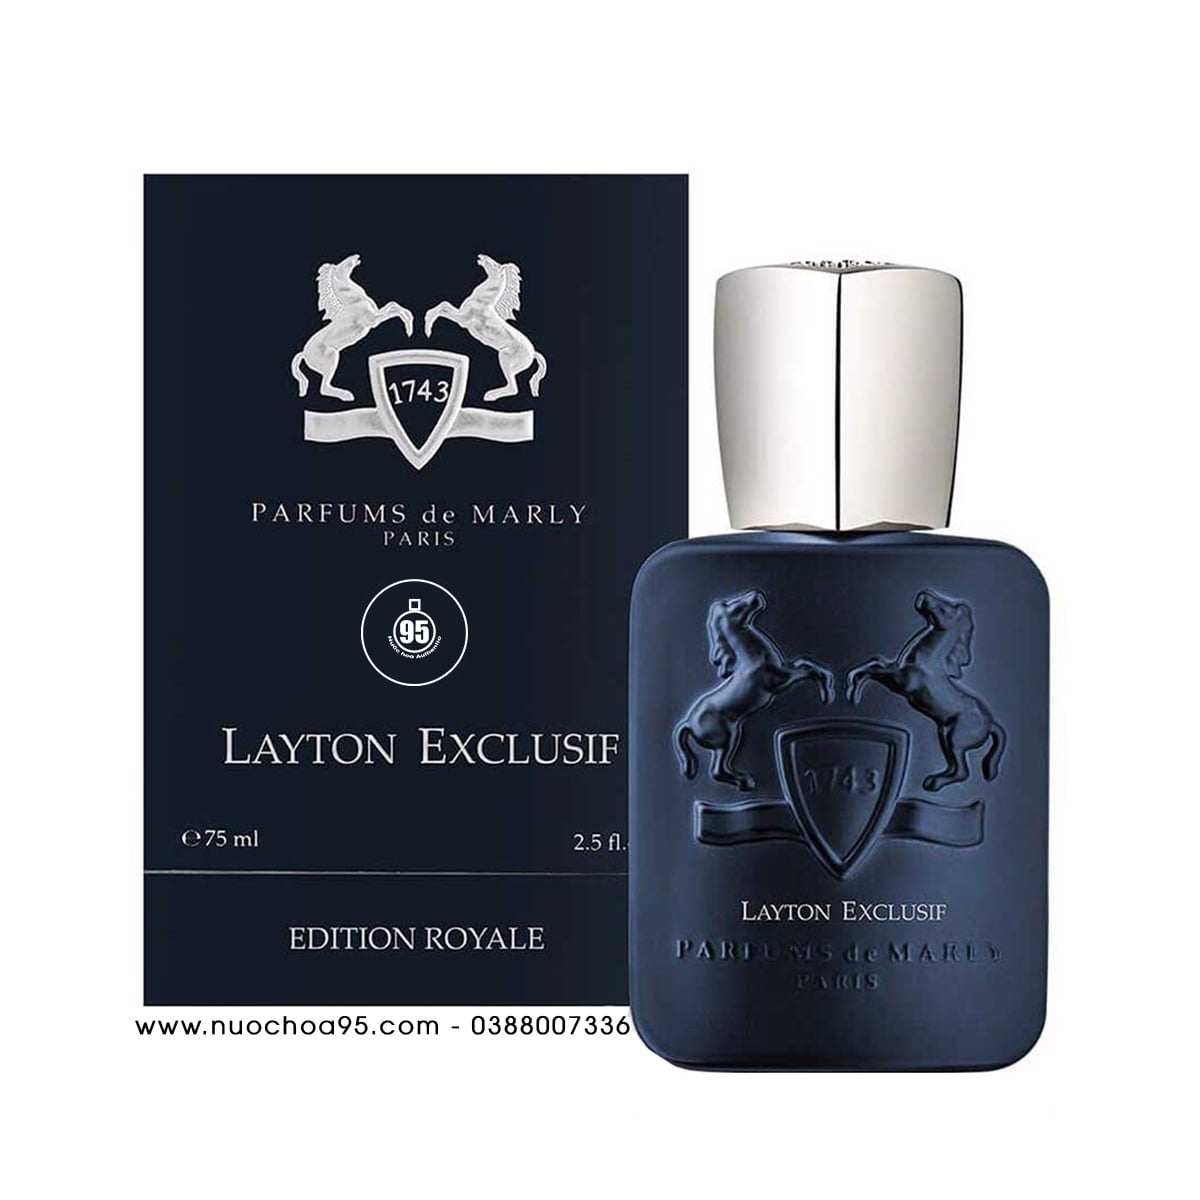 Nước hoa Parfums de Marly Layton Exclusif